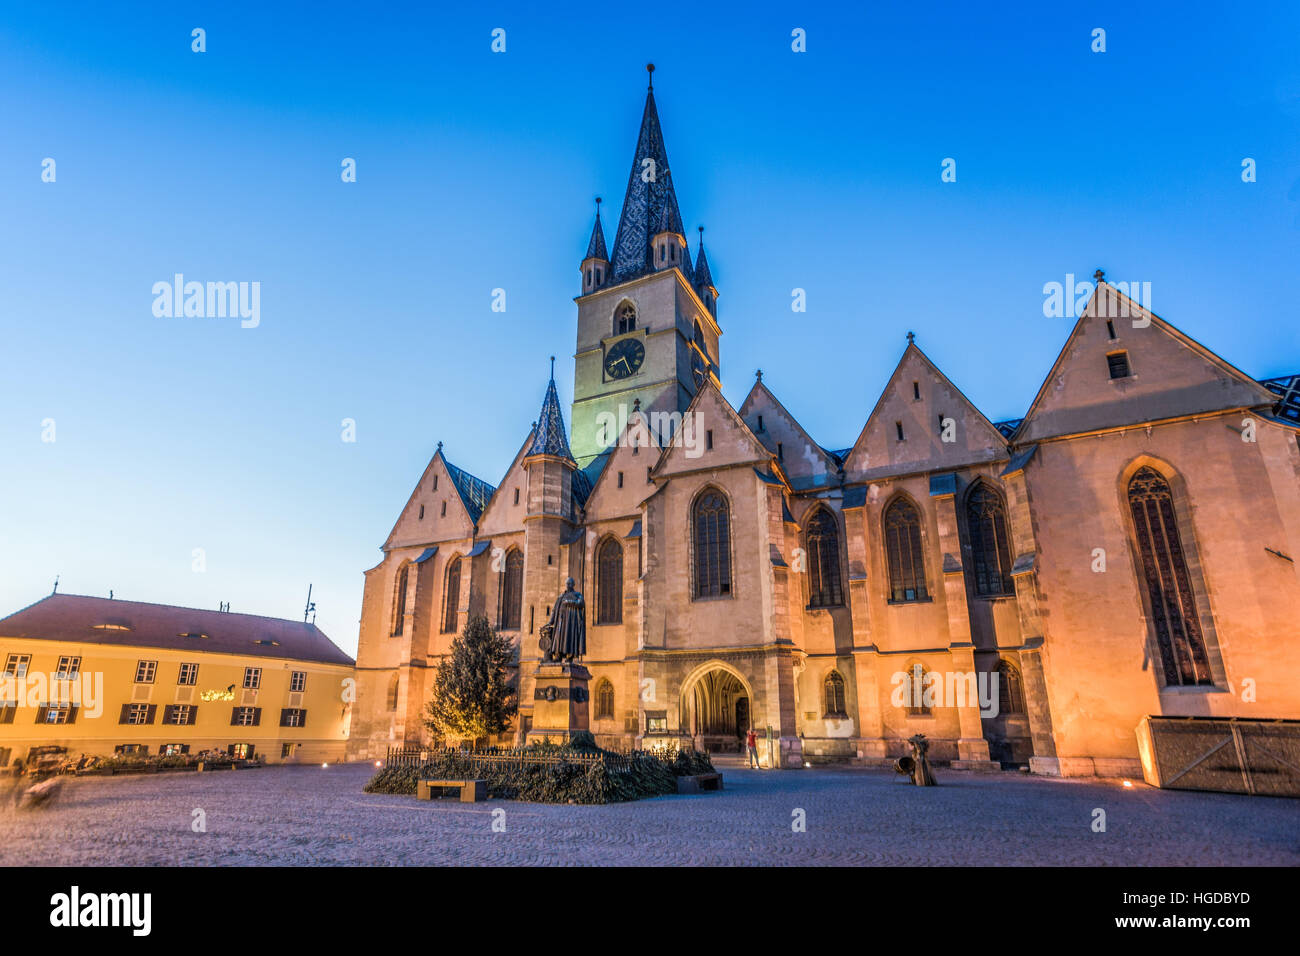 La ciudad de Sibiu, Rumania, Catedral Evangélica de Sebiu, Teutsch monumento. Foto de stock